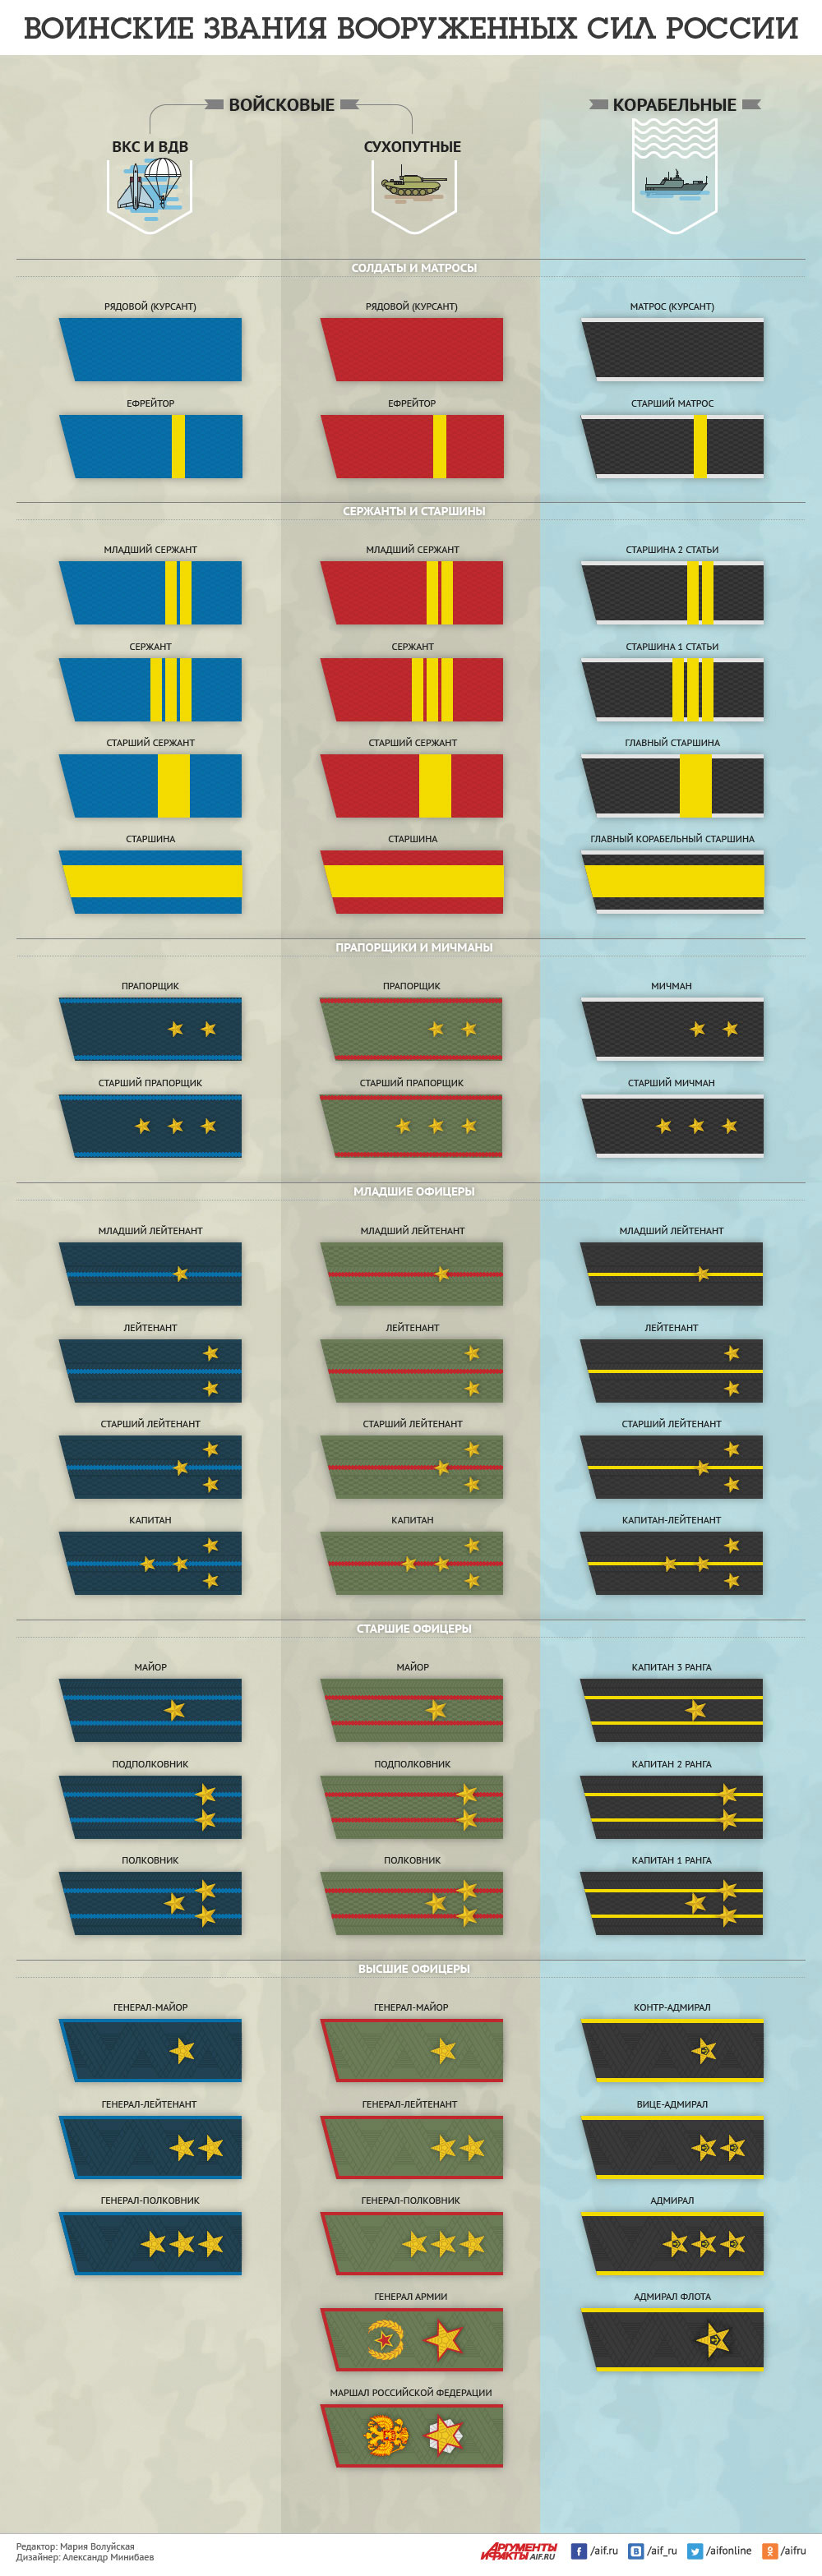 Звания в армии России по возрастанию, таблица воинских званий по порядку